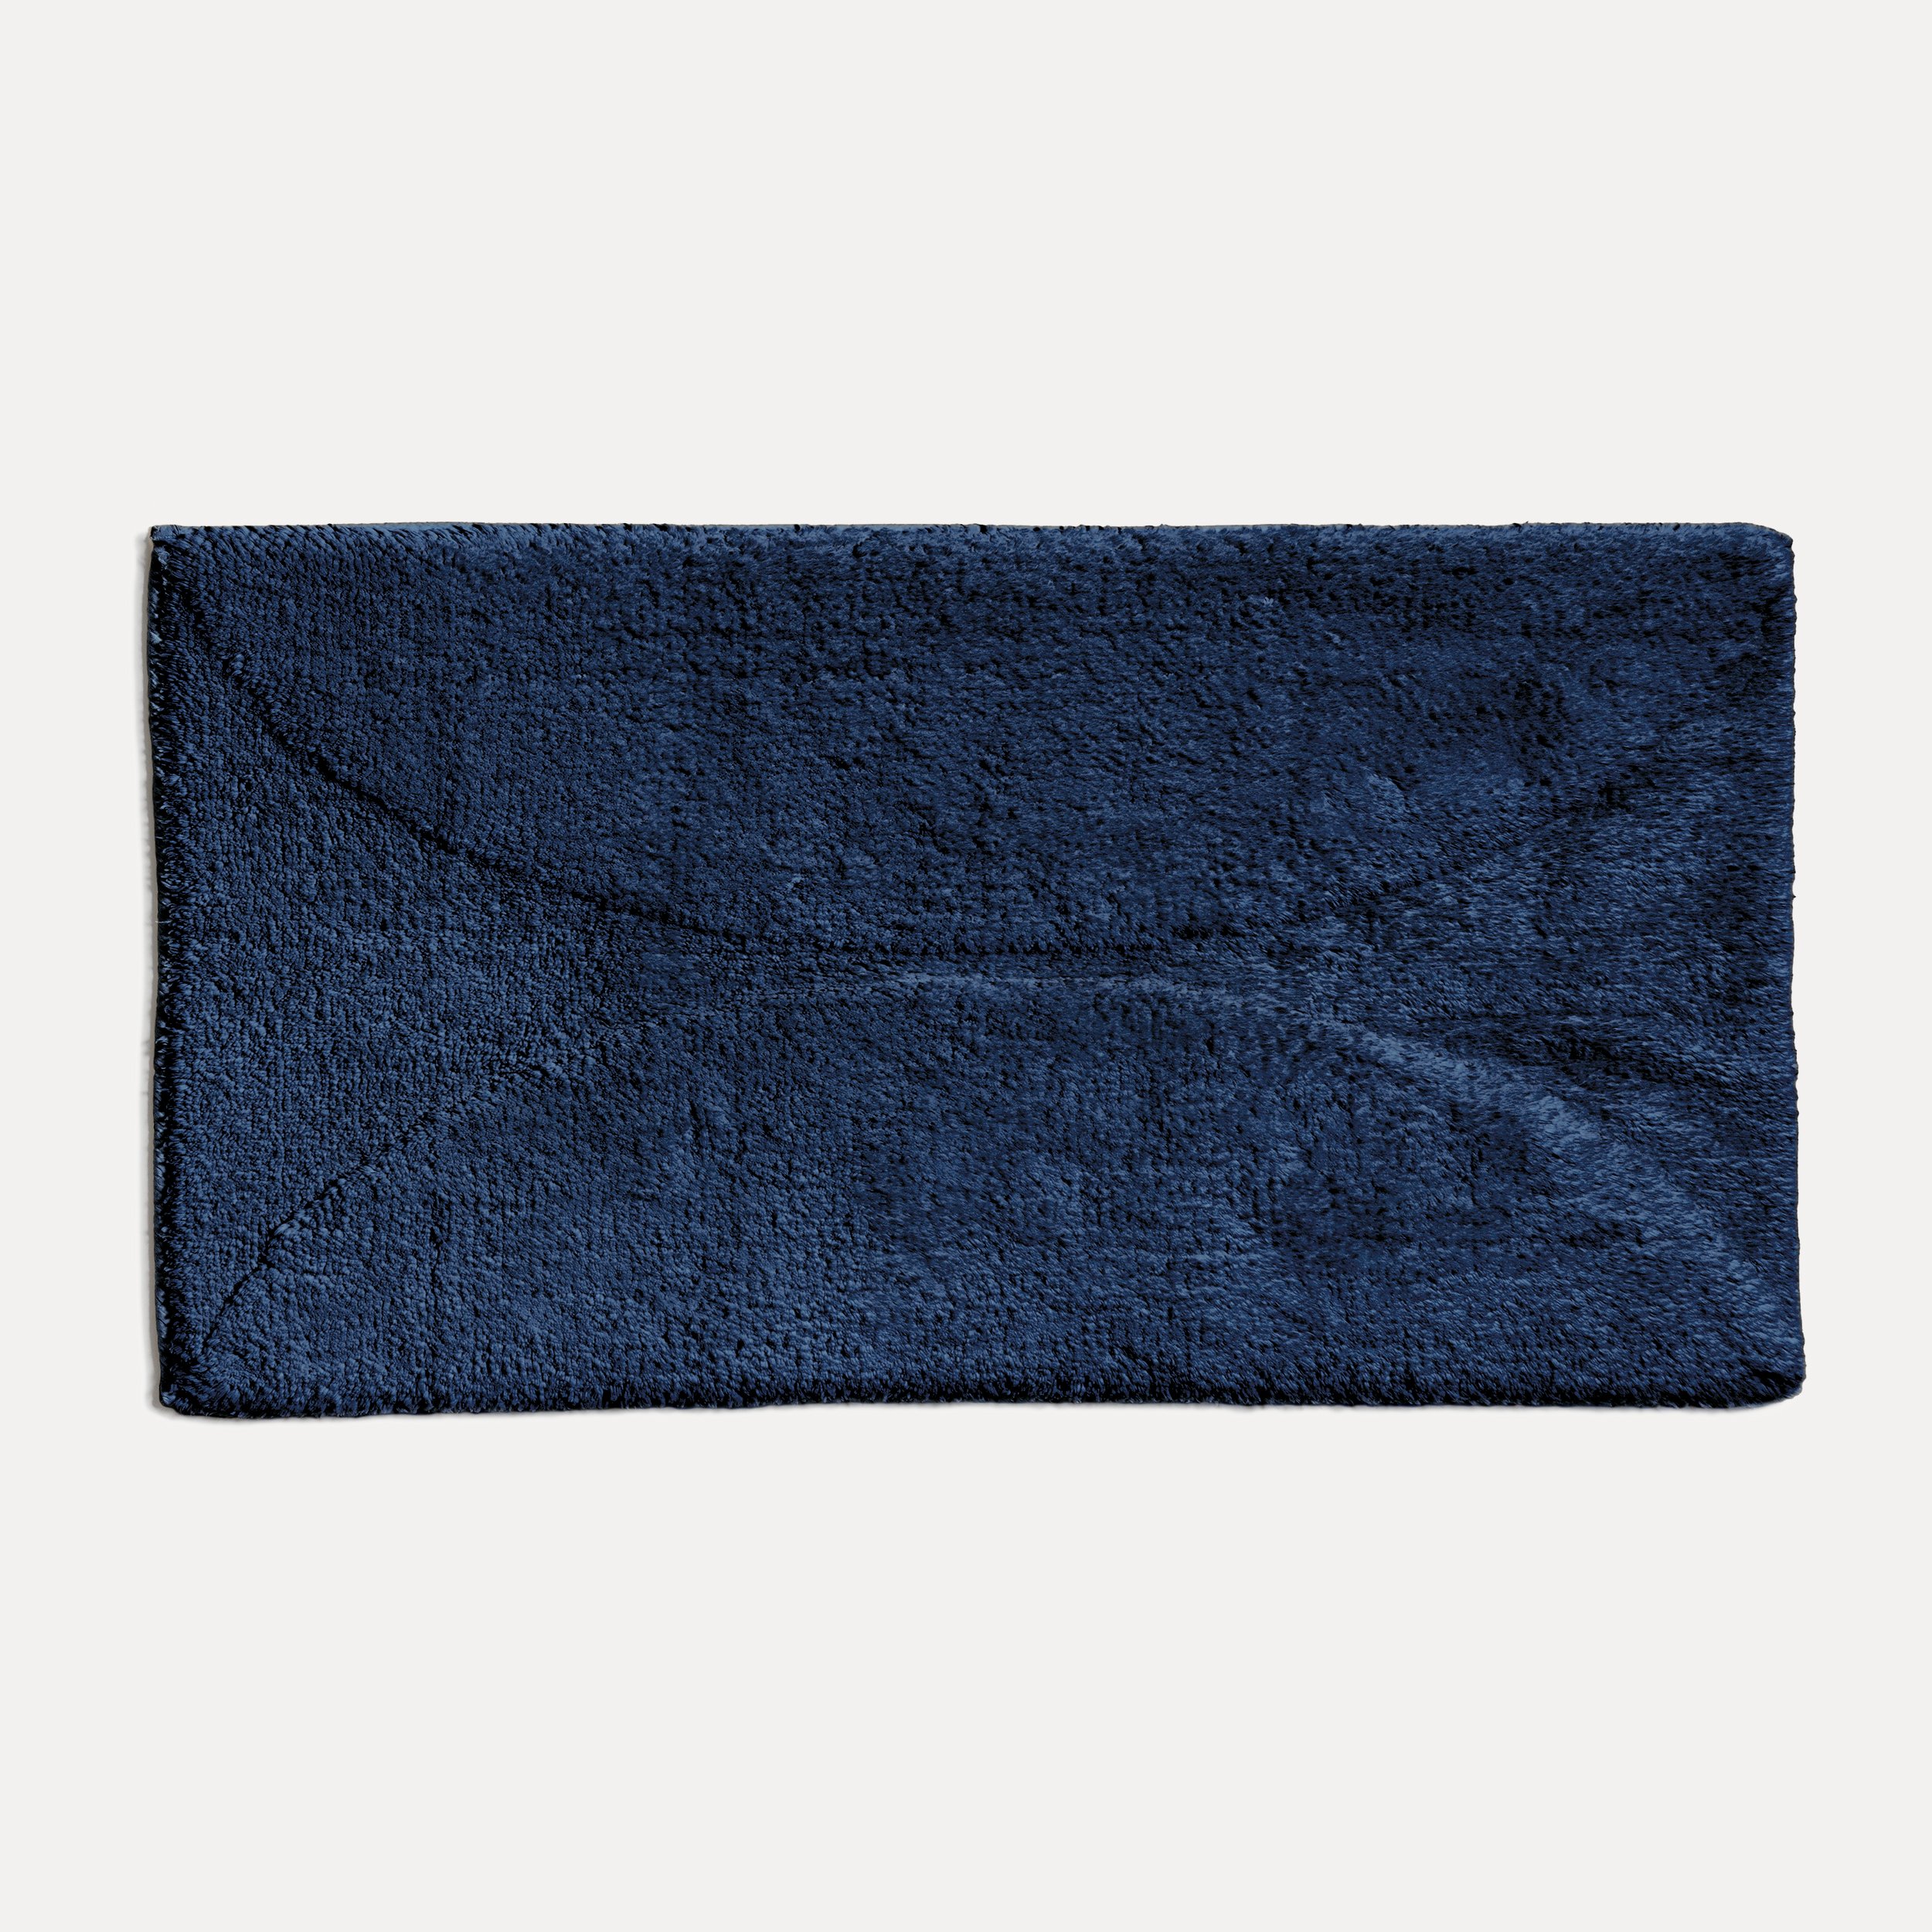 möve Autumn Delights Blau blue)| Badematte cm MÖVE (dark 60x100